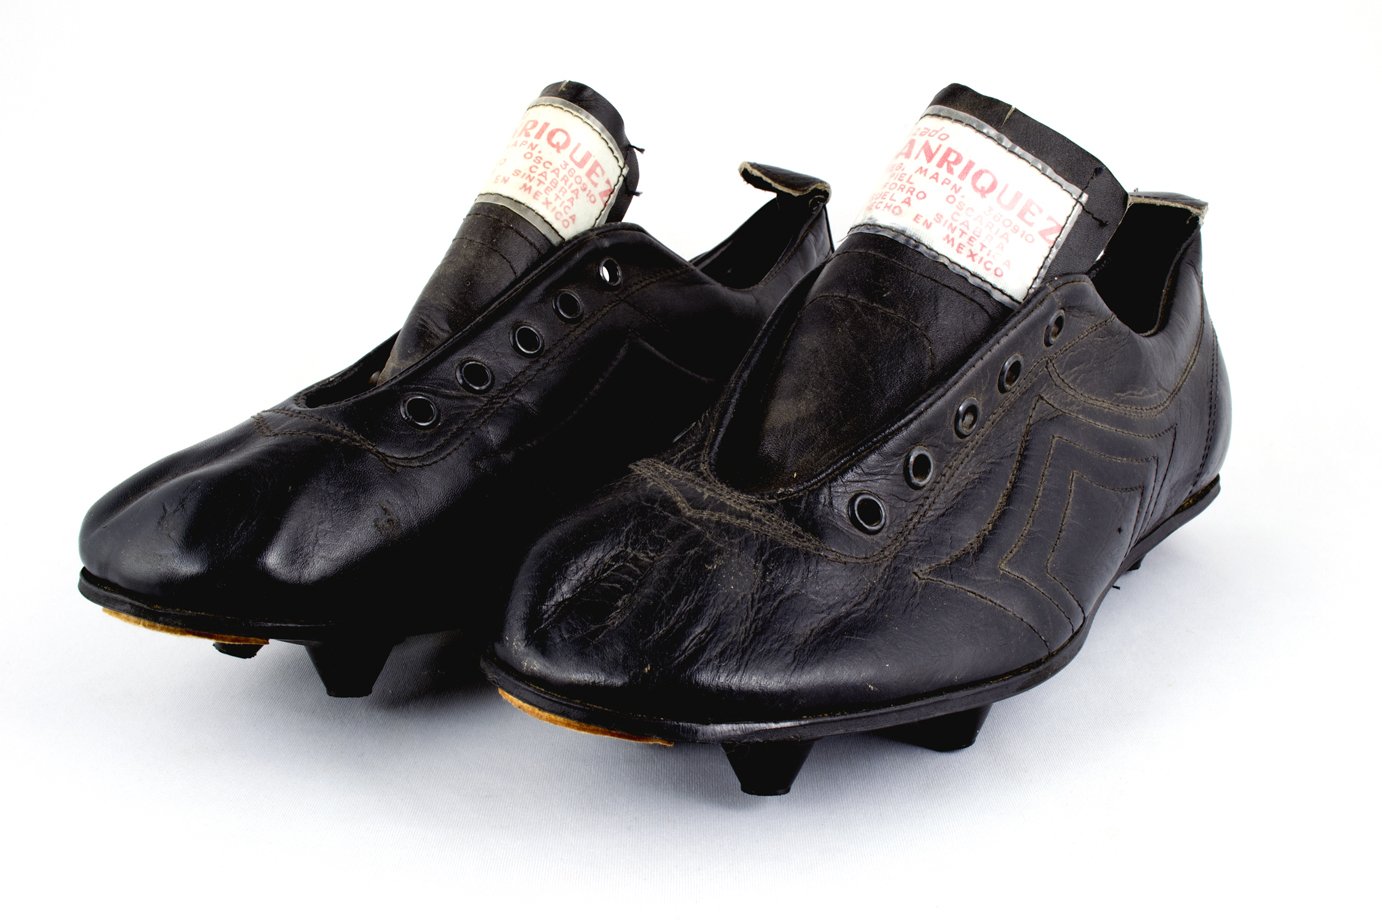 MuseoObjetodelObjeto Twitter: "Los primeros modelos de #zapatos para # futbol, eran de cuero rígido y clavos incrustados en una suela madera. #GolesyPasiones #futbolMexicano #VamosALMODO https://t.co/PWTpelYTOq" / Twitter